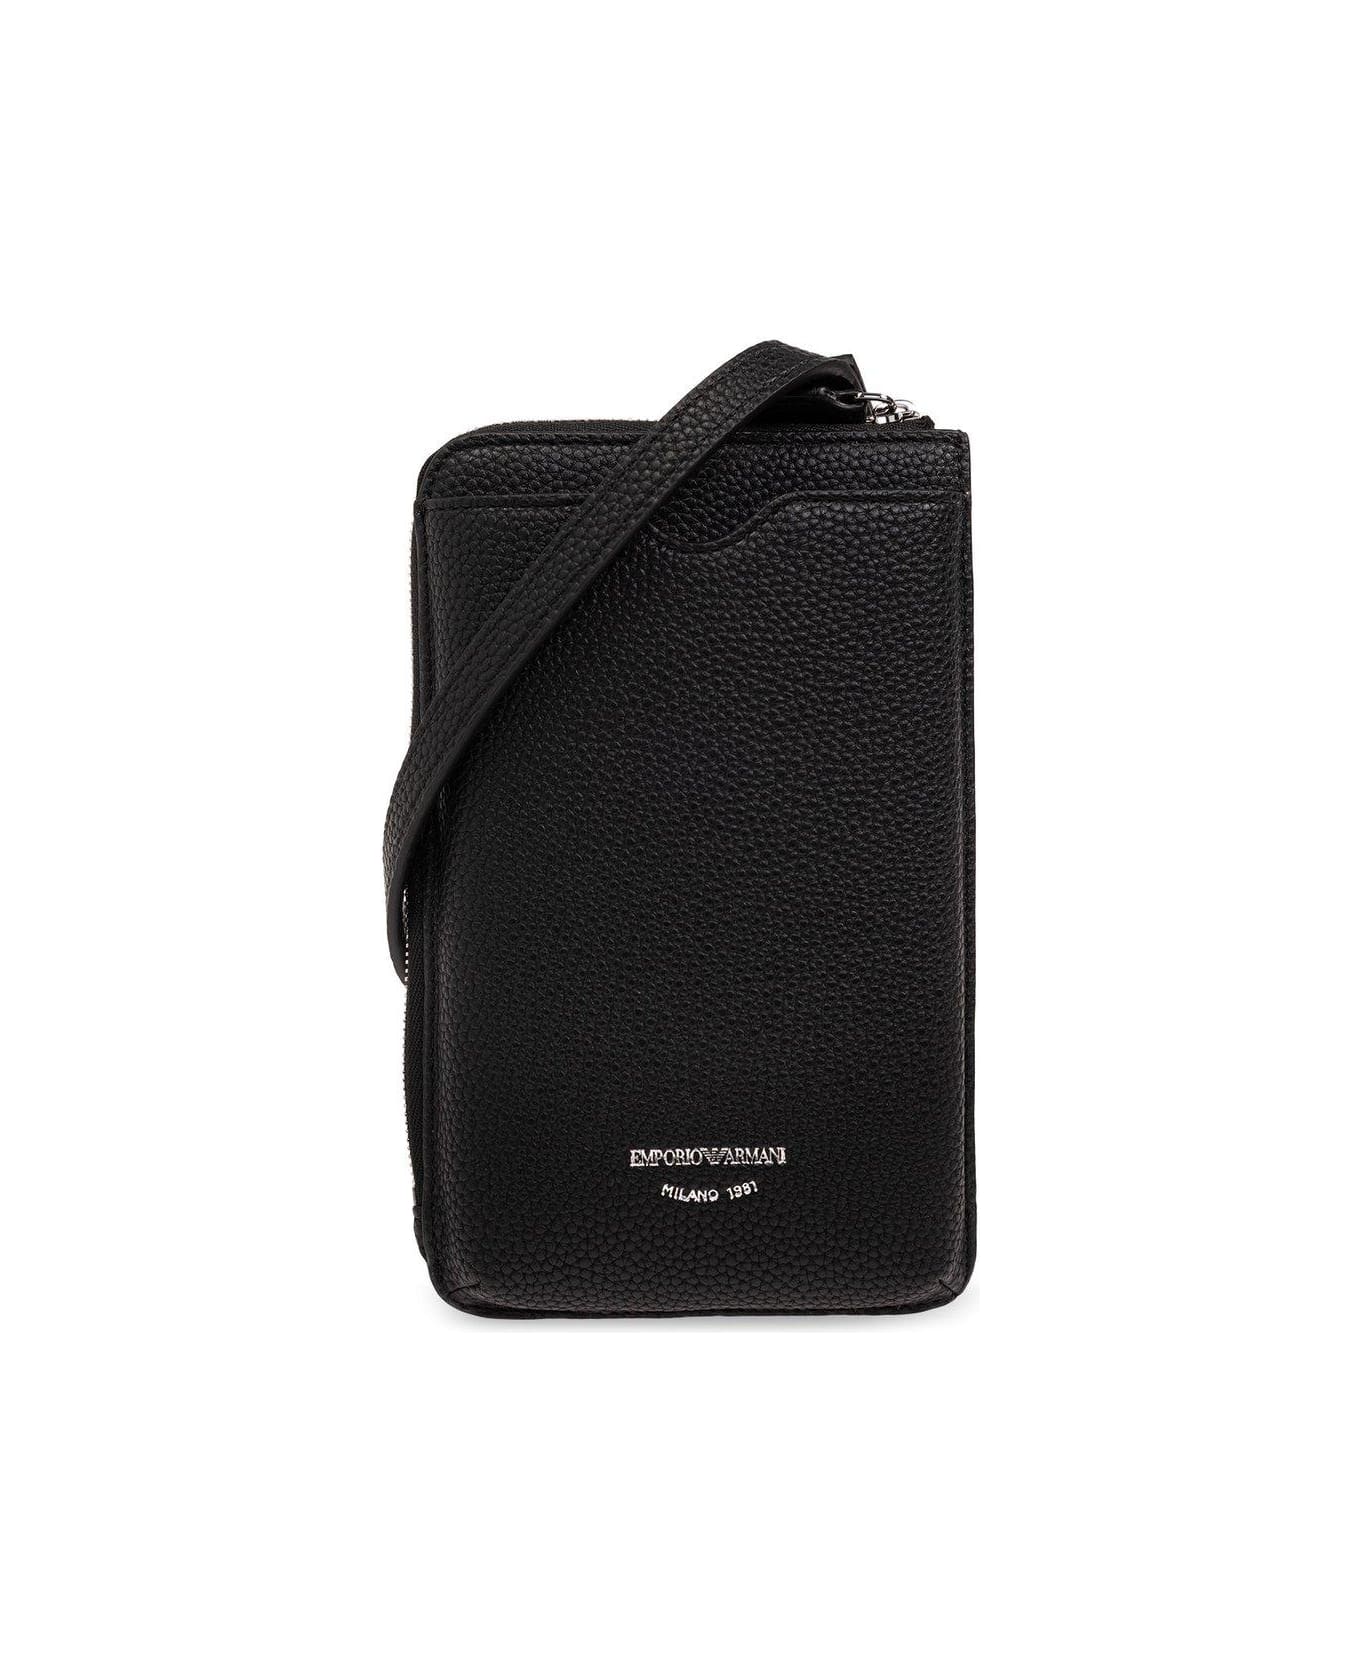 Emporio Armani Strapped Phone Holder - Black